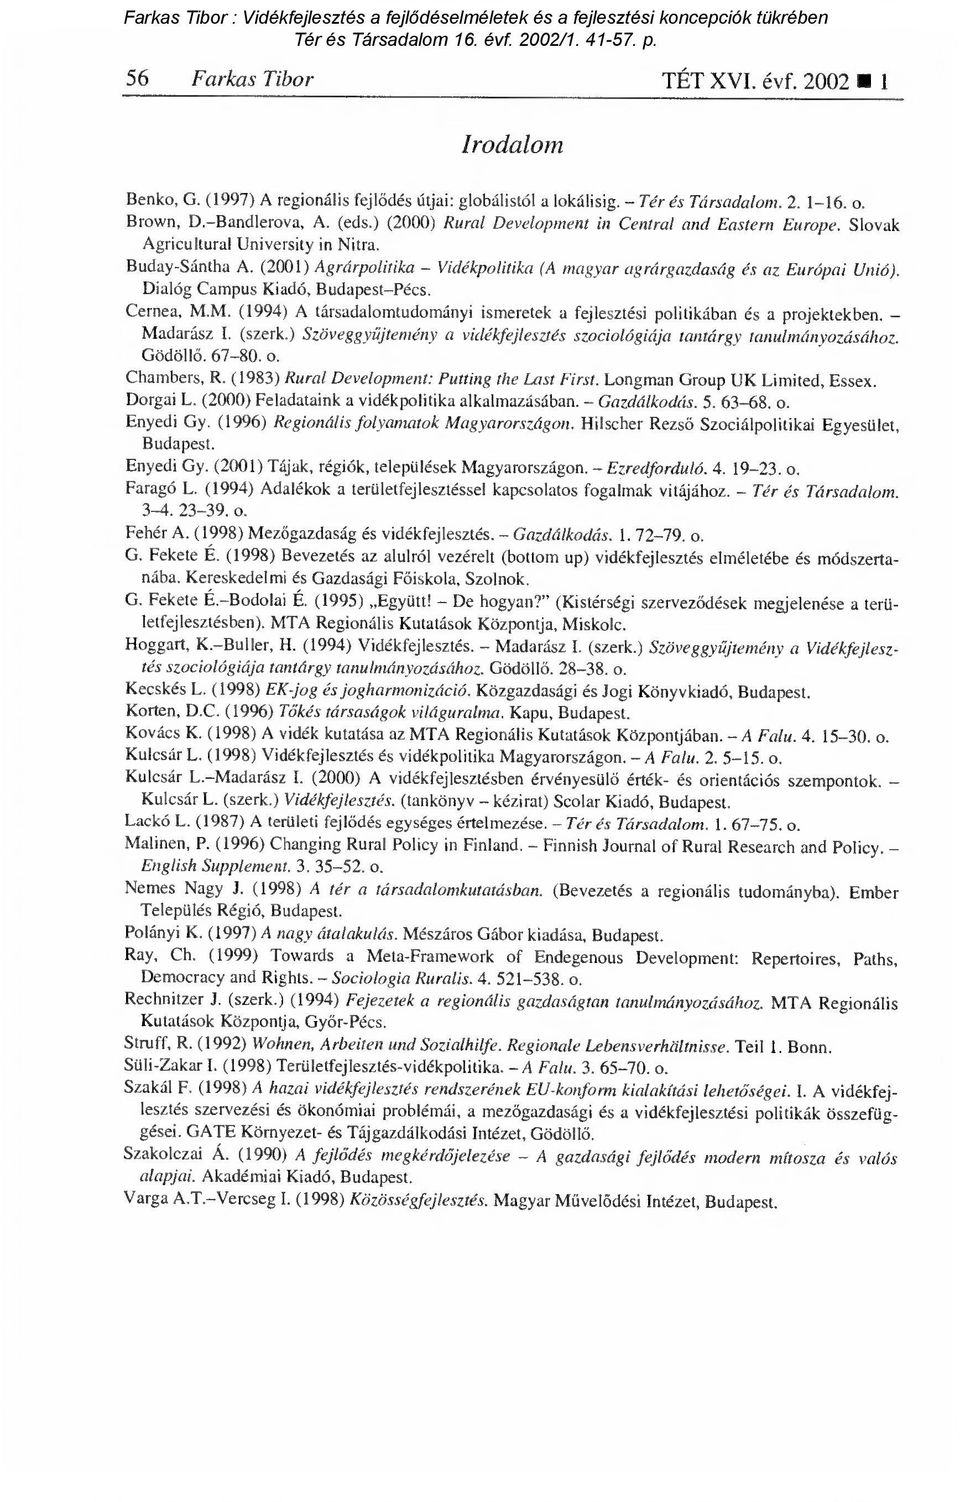 Dialóg Campus Kiadó, Budapest Pécs. Cernea, M.M. (1994) A társadalomtudományi ismeretek a fejlesztési politikában és a projektekben. Madarász I. (szerk.